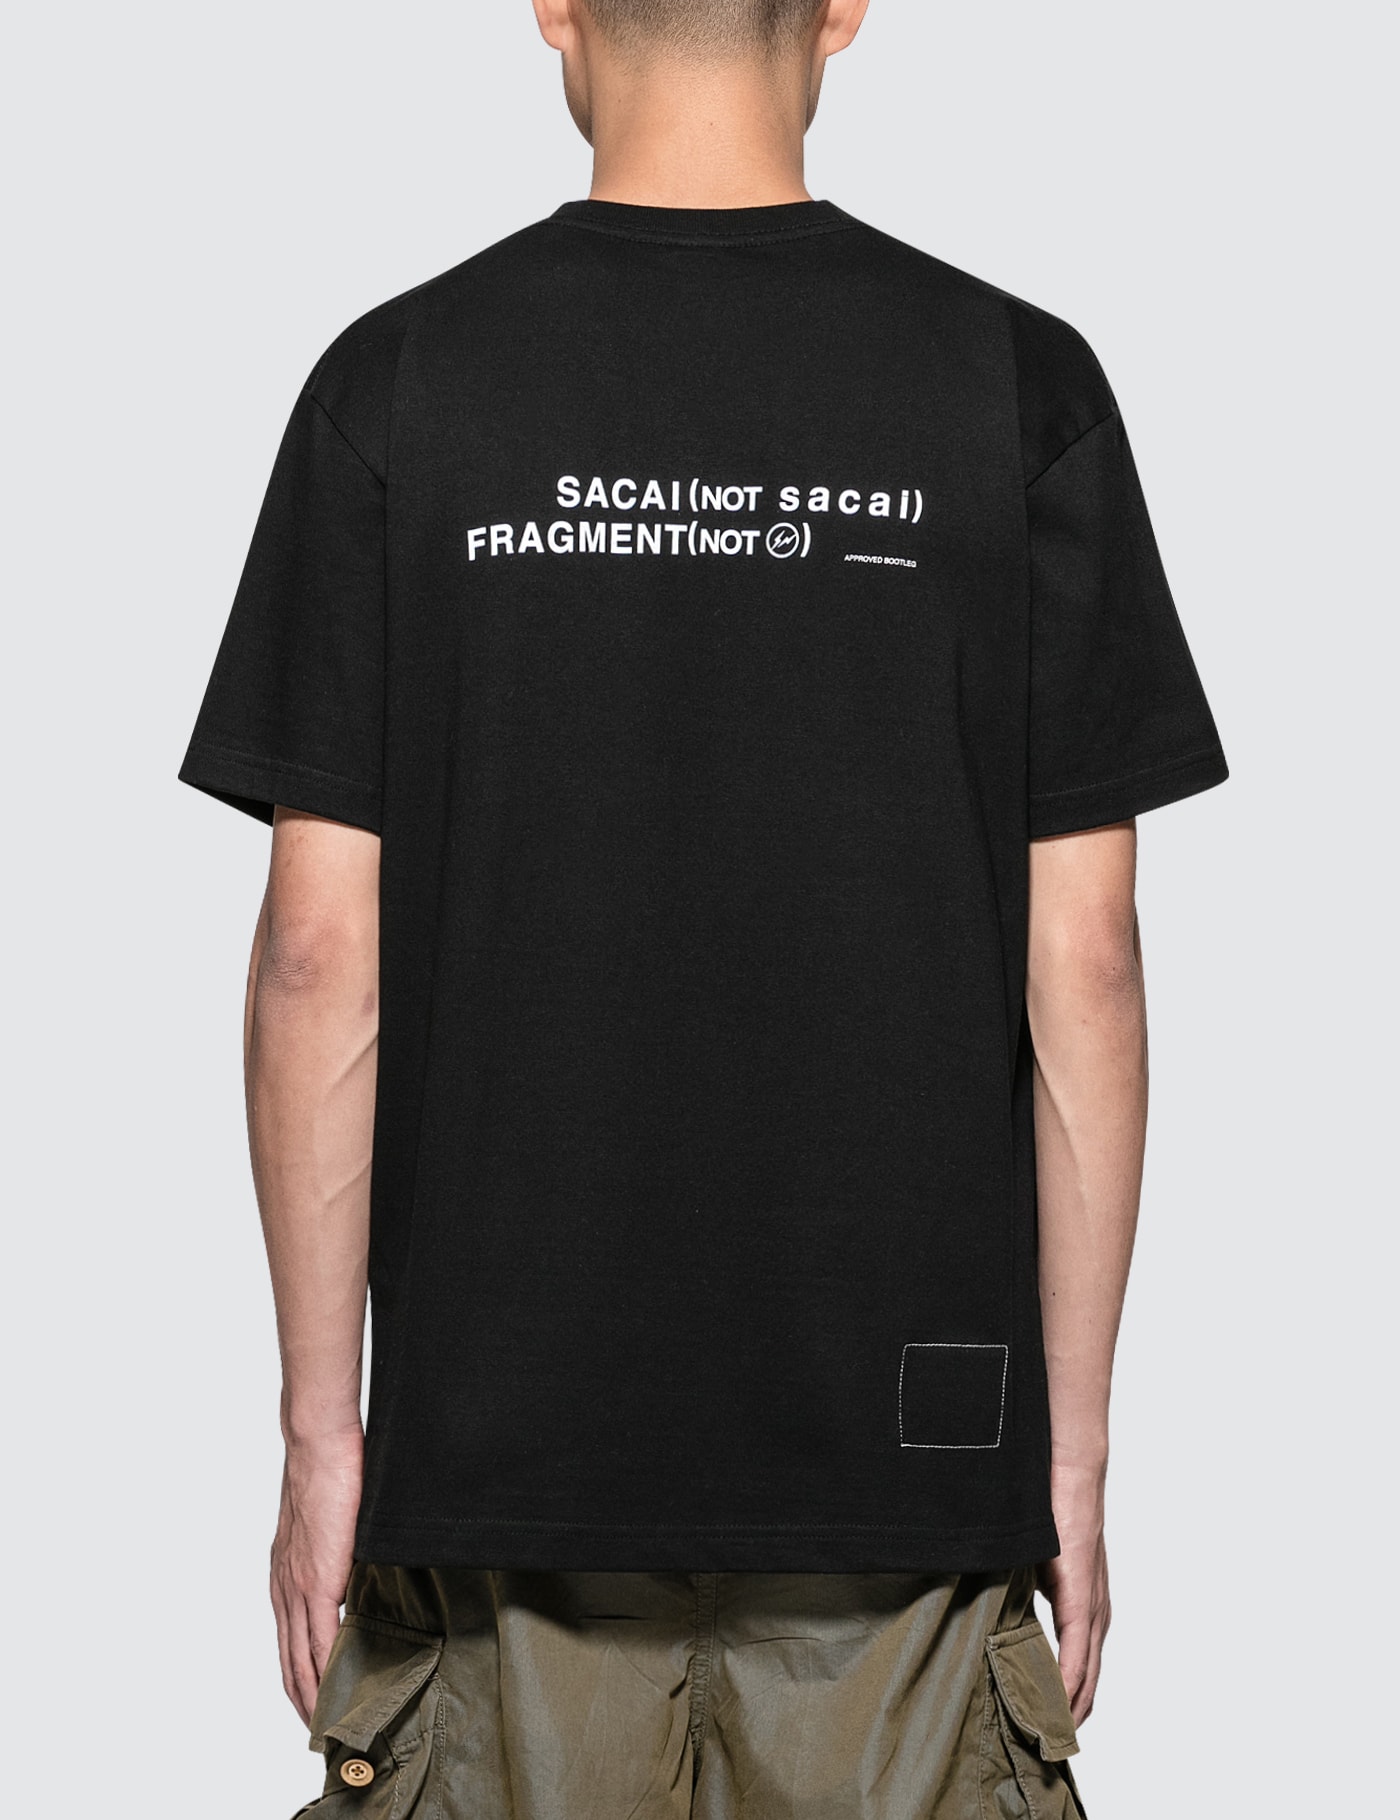 Sacai x Fragment Design - Sacai S/S T-Shirt | HBX